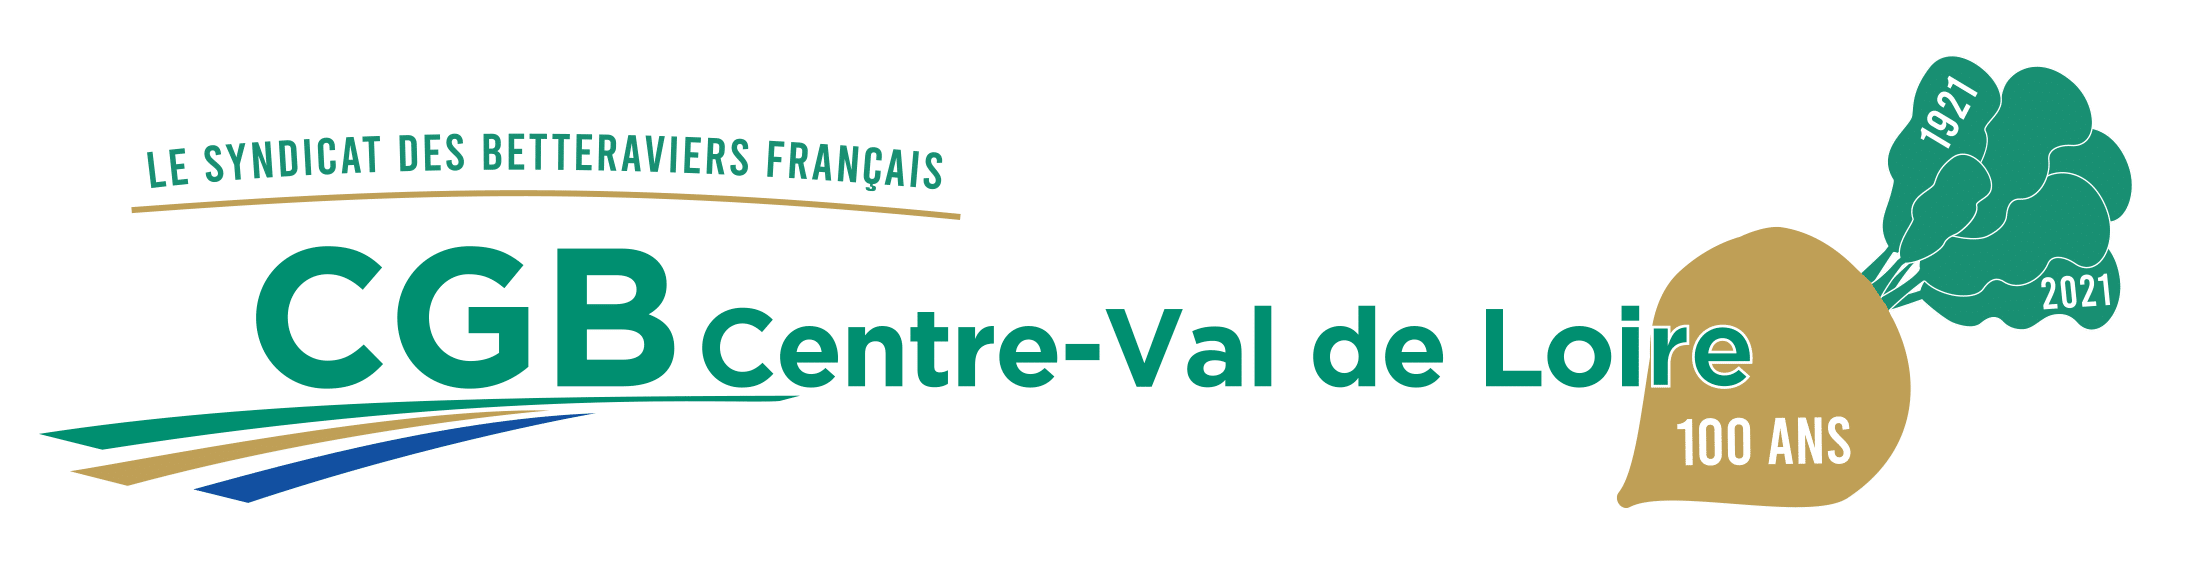 logo-cgb-centre-val-de-loire-100ans-png